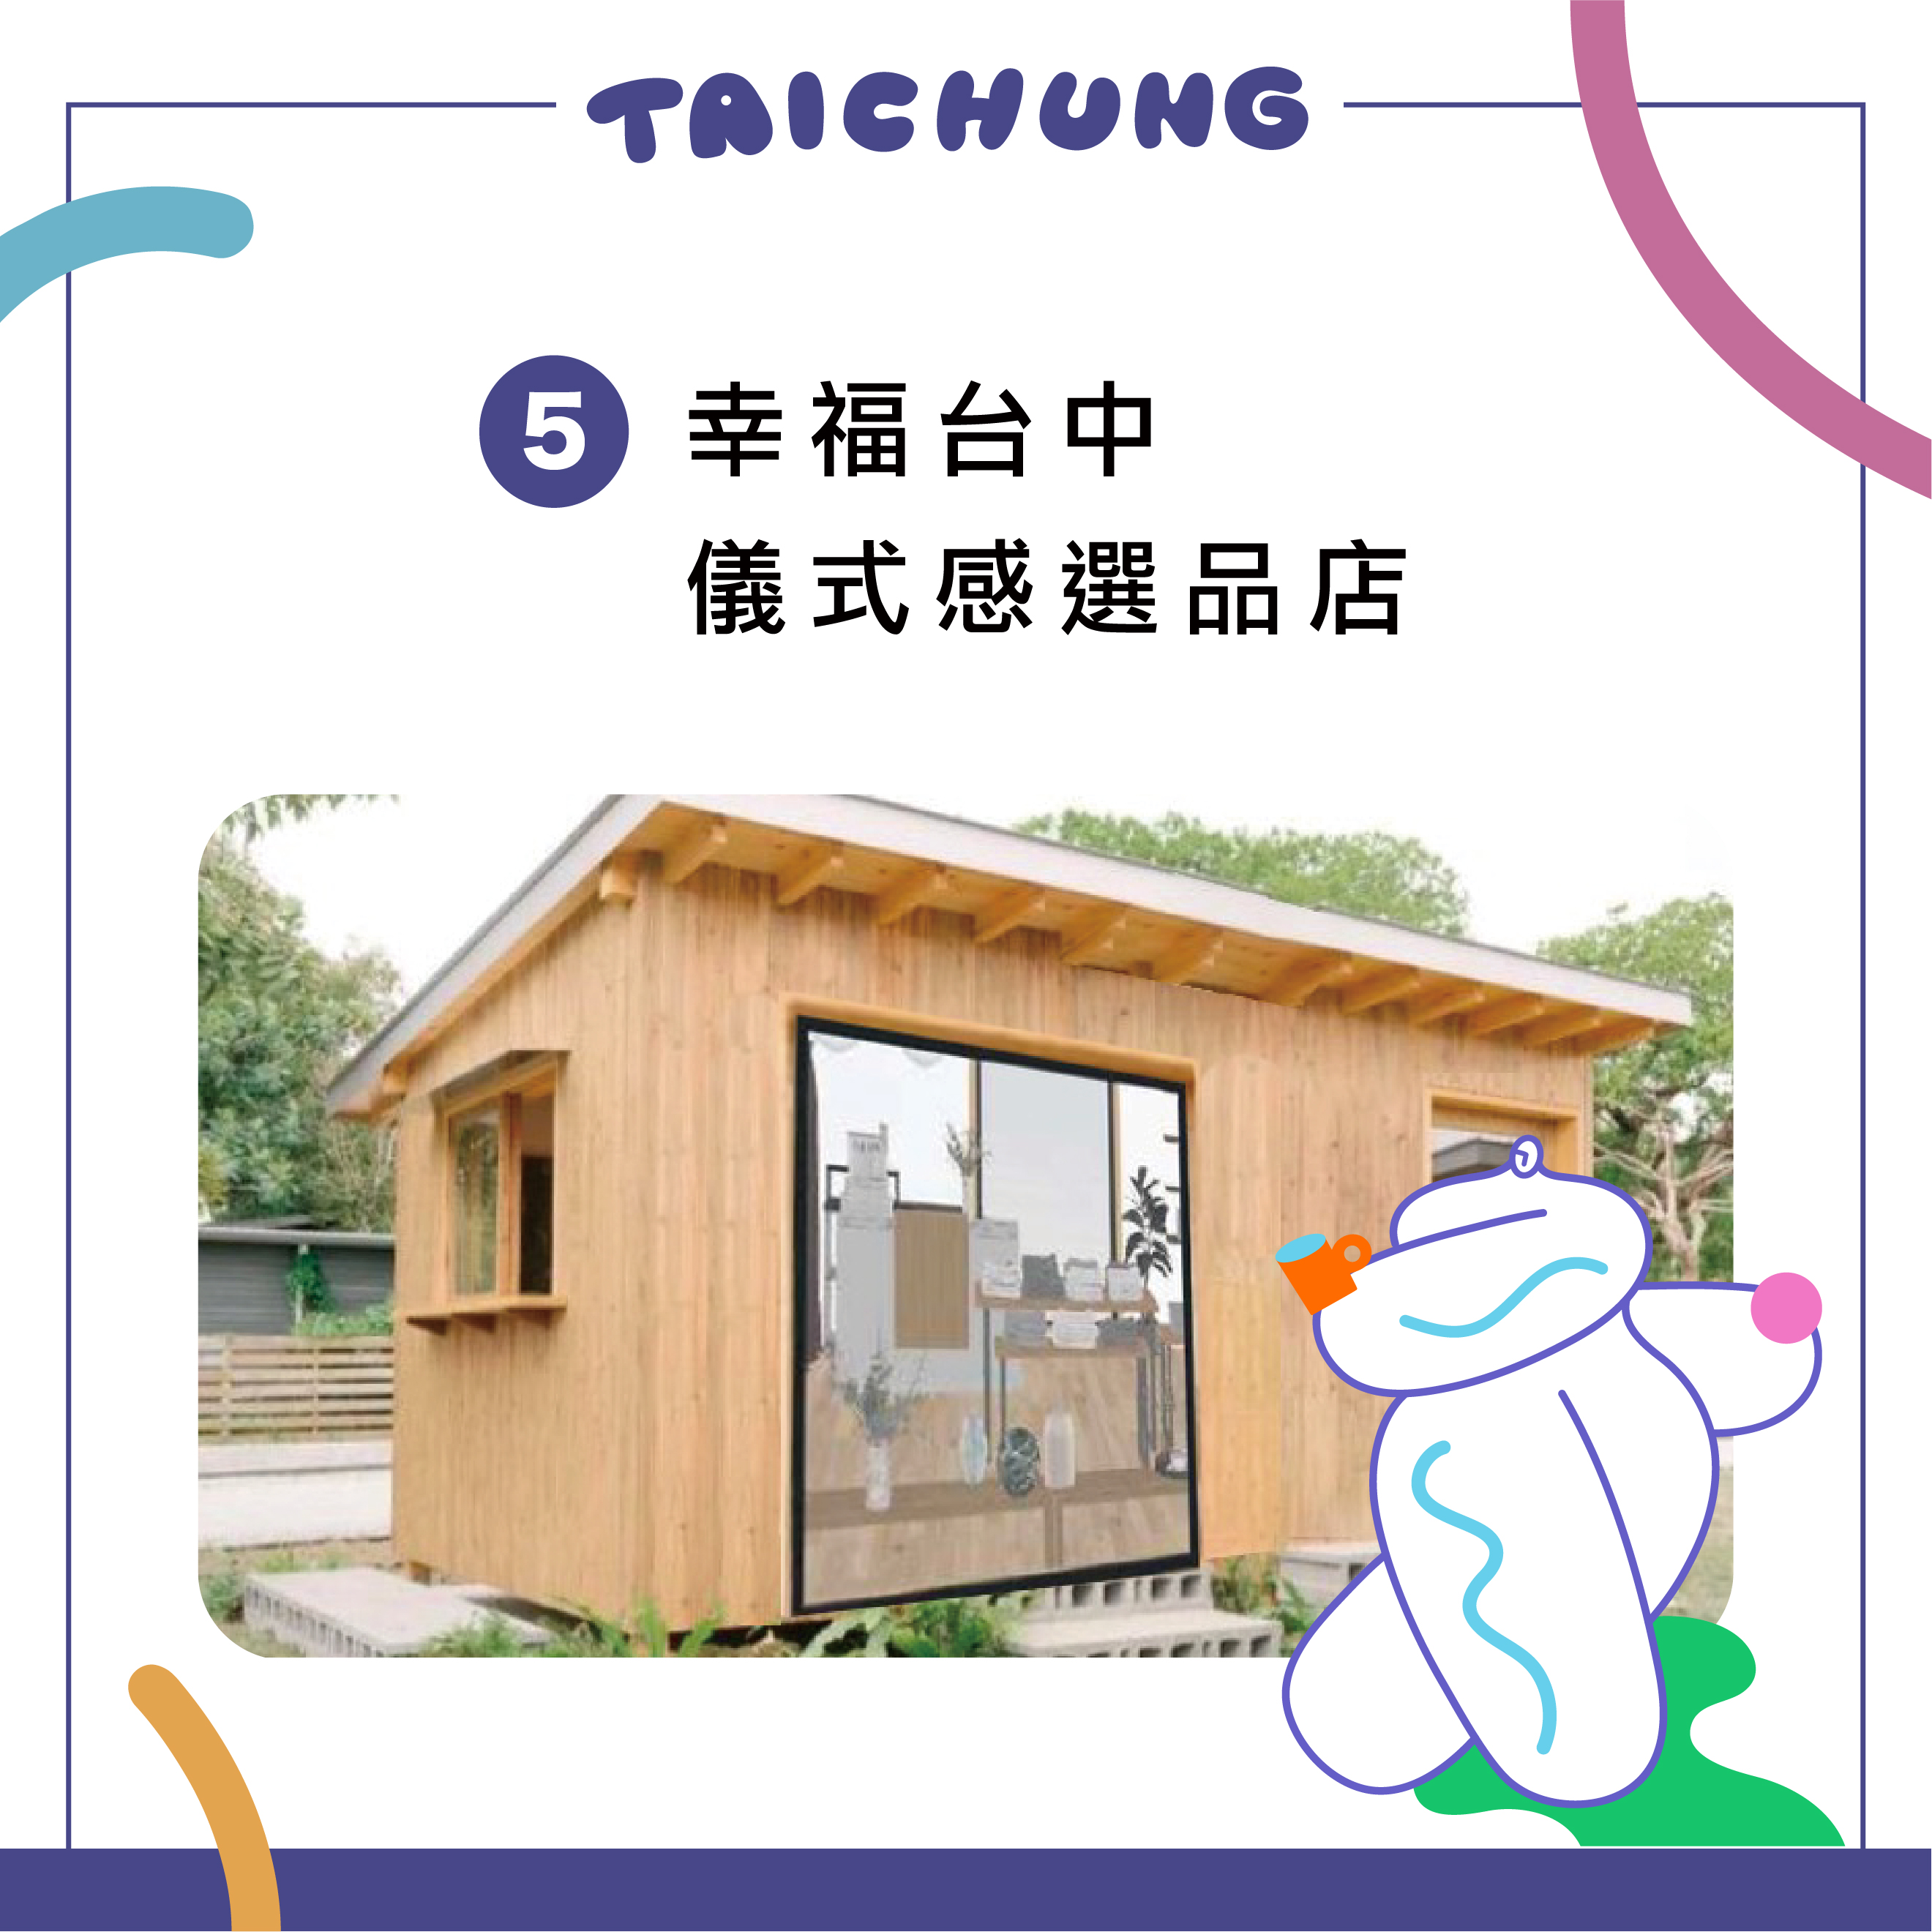 5. 幸福台中儀式感選品店 Taichung’s Rituals of Happiness Gift Shop